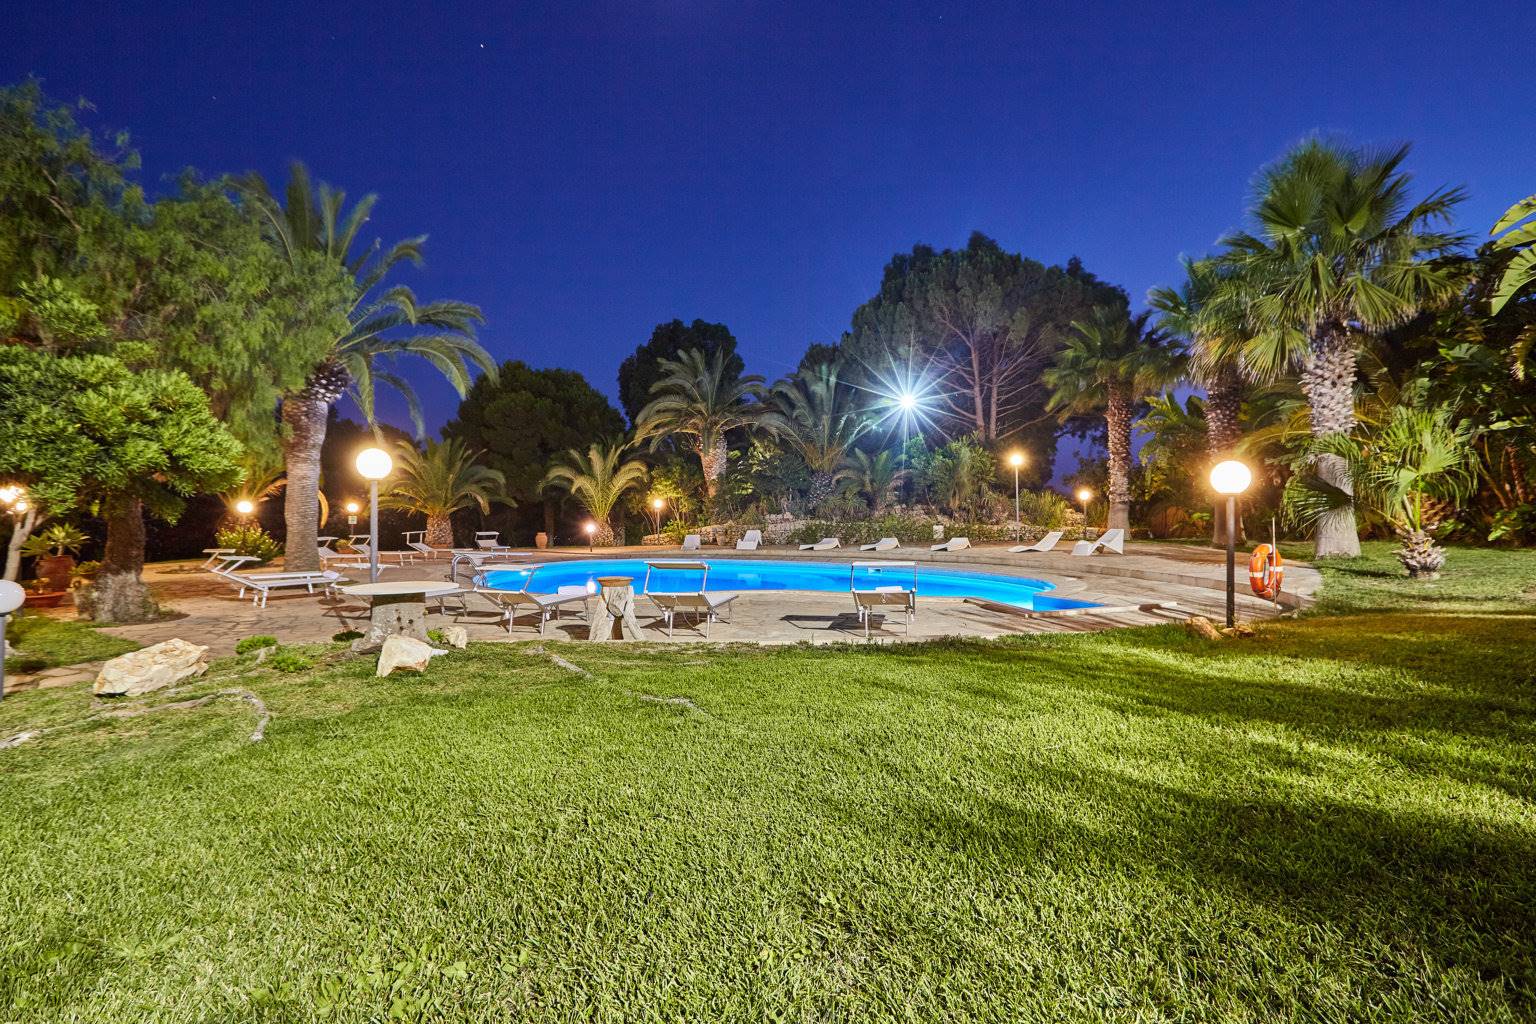 Villa con piscina in vendita a Marina di Modica a 300 m dal mare. Splendida proprietà immobiliare in vendita composta da: villa principale di 600 mq, dependance, giardino di 15.000 mq con piscina. La 